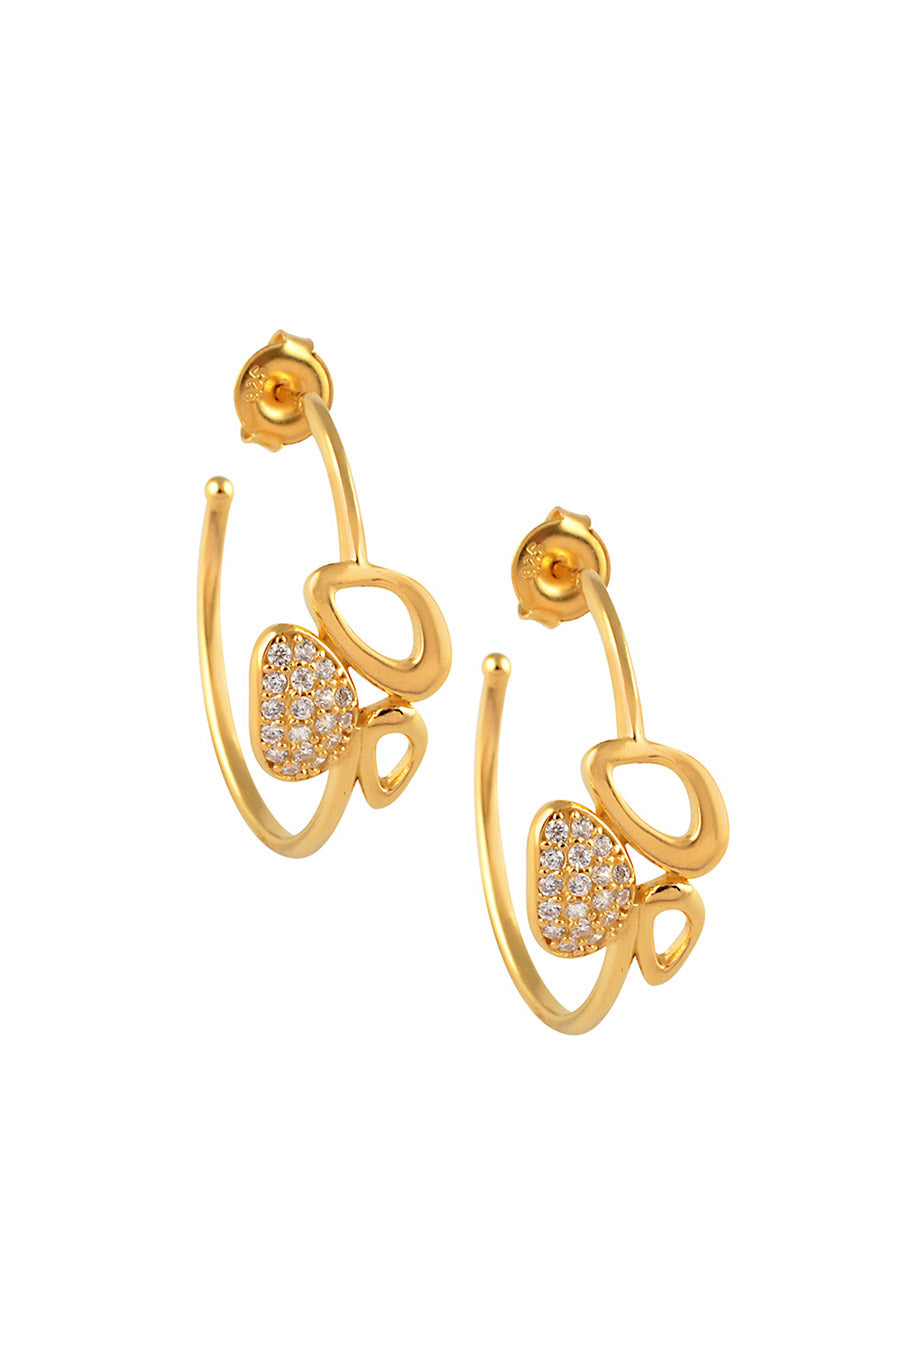 Enchanted Tri Motif Golden Hoop Earrings